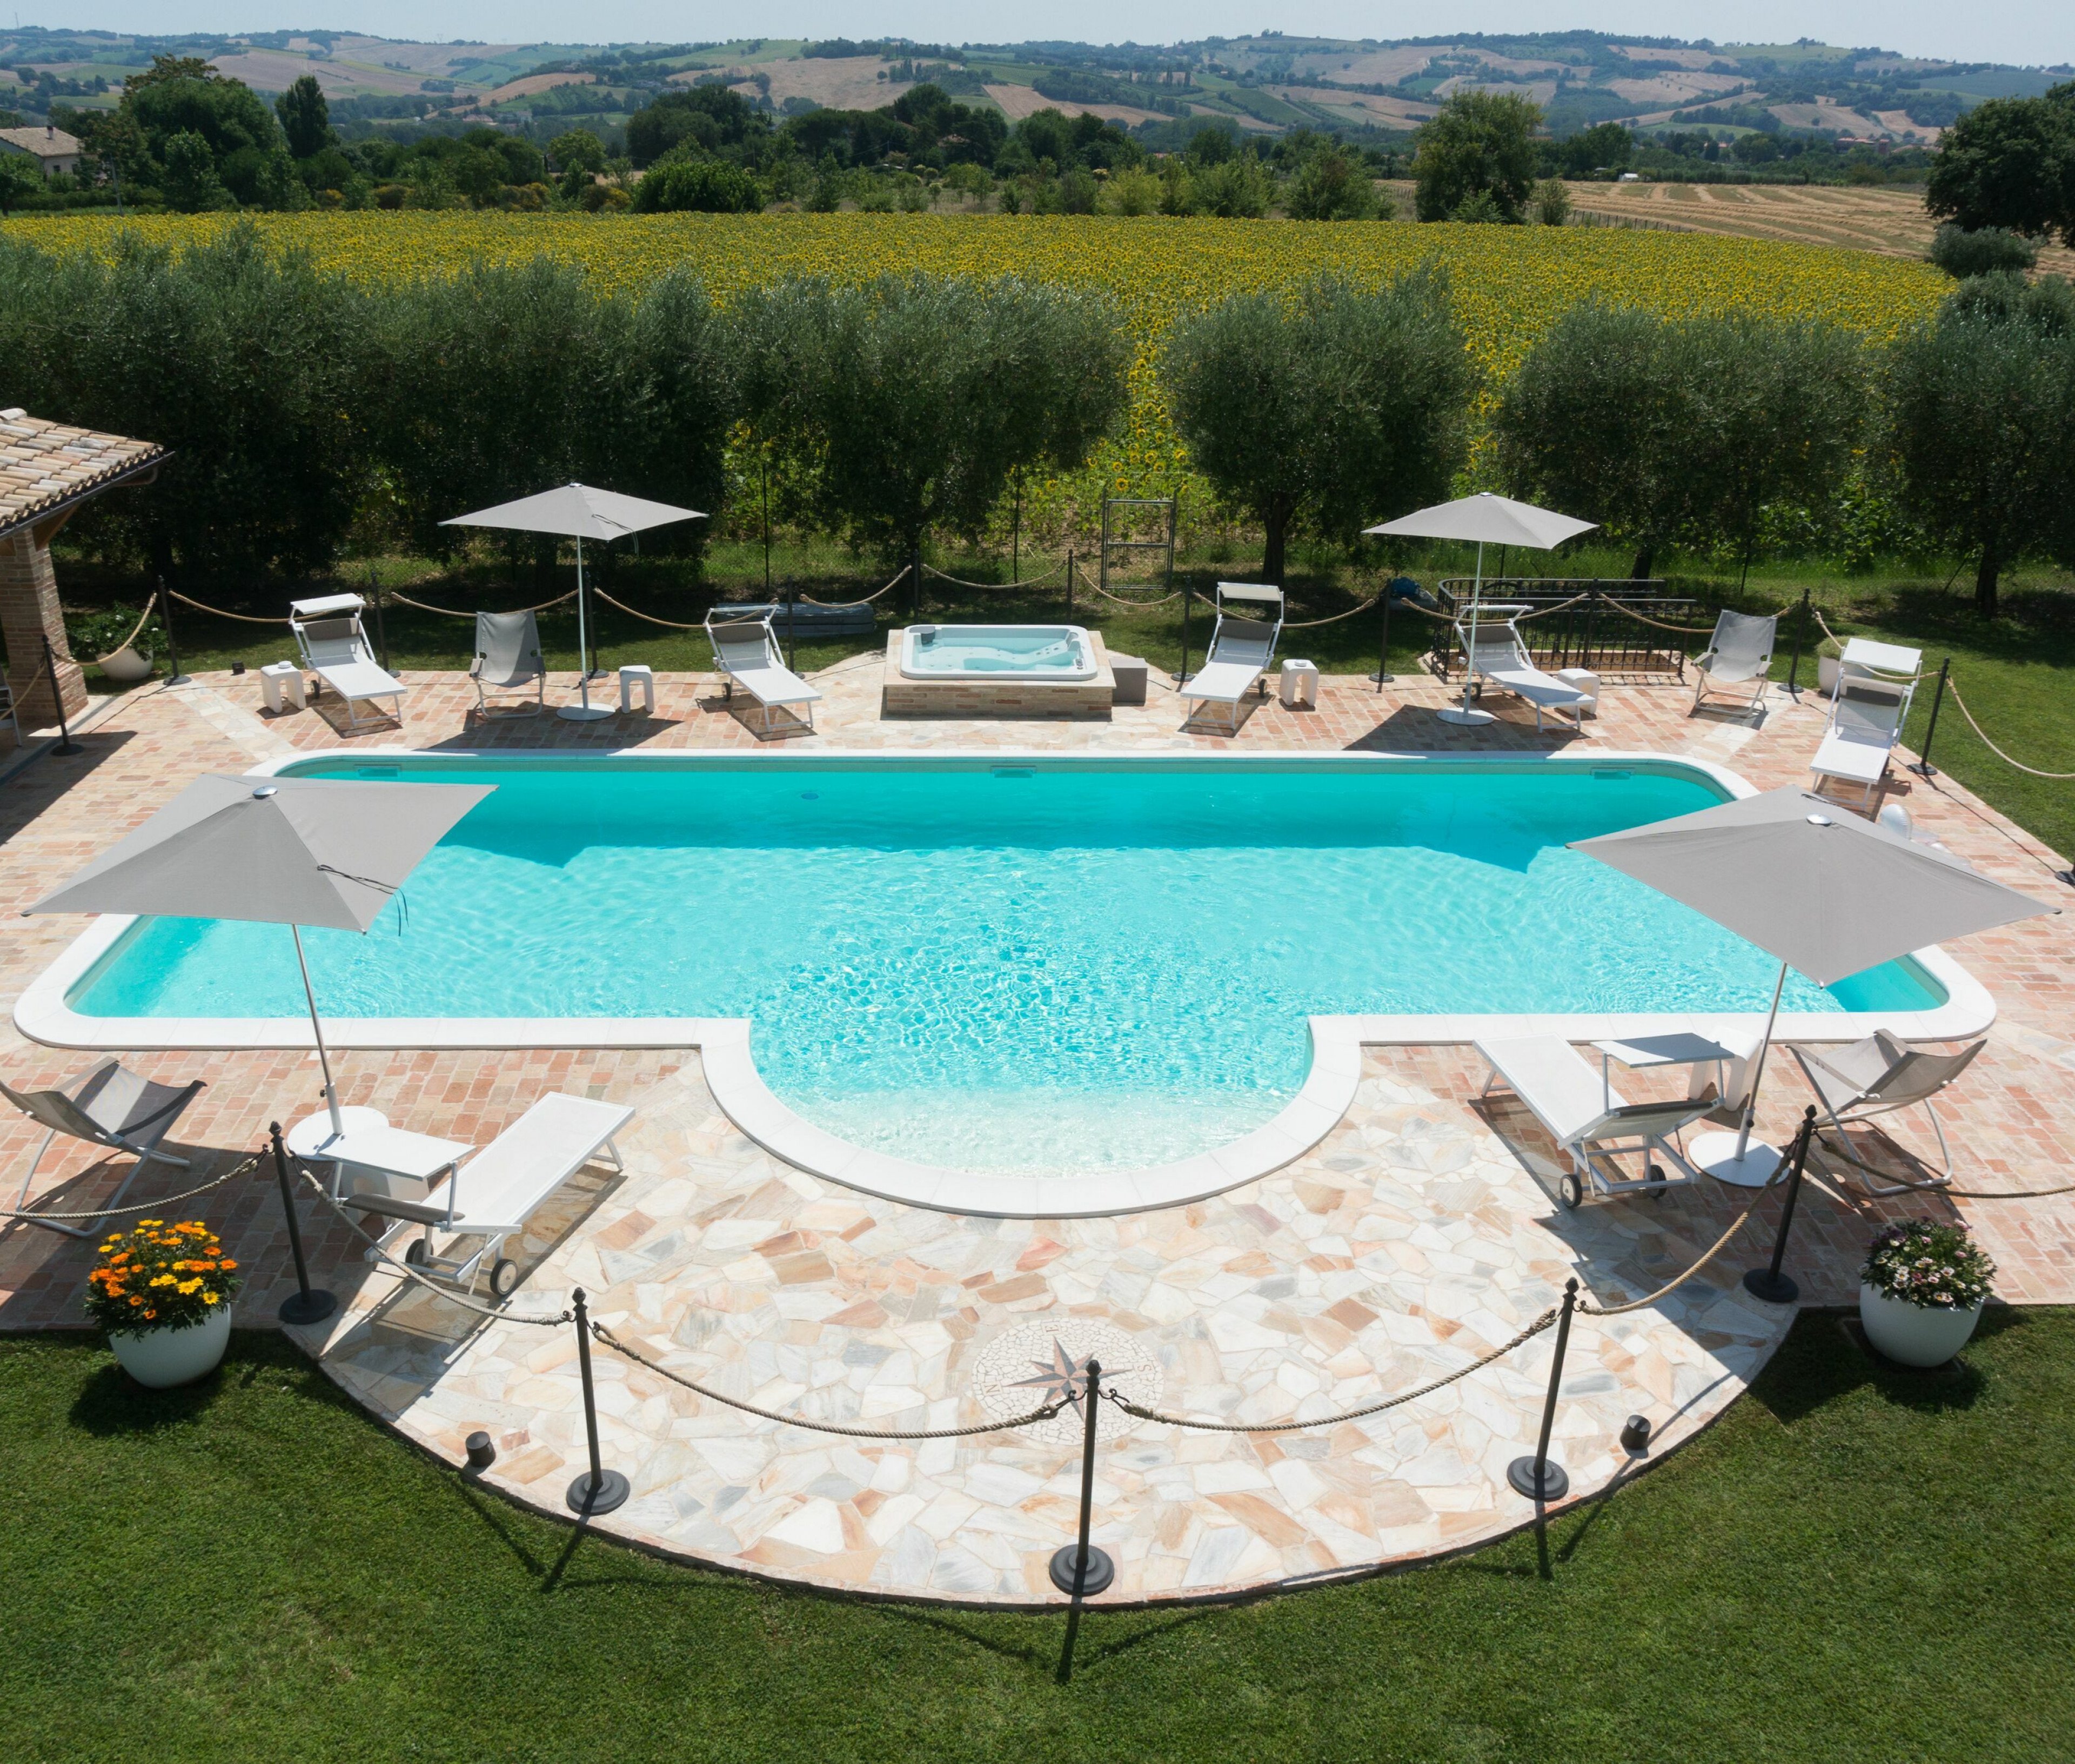 Villa Your Country Escape - Le Marche Italy Vacation Rentals